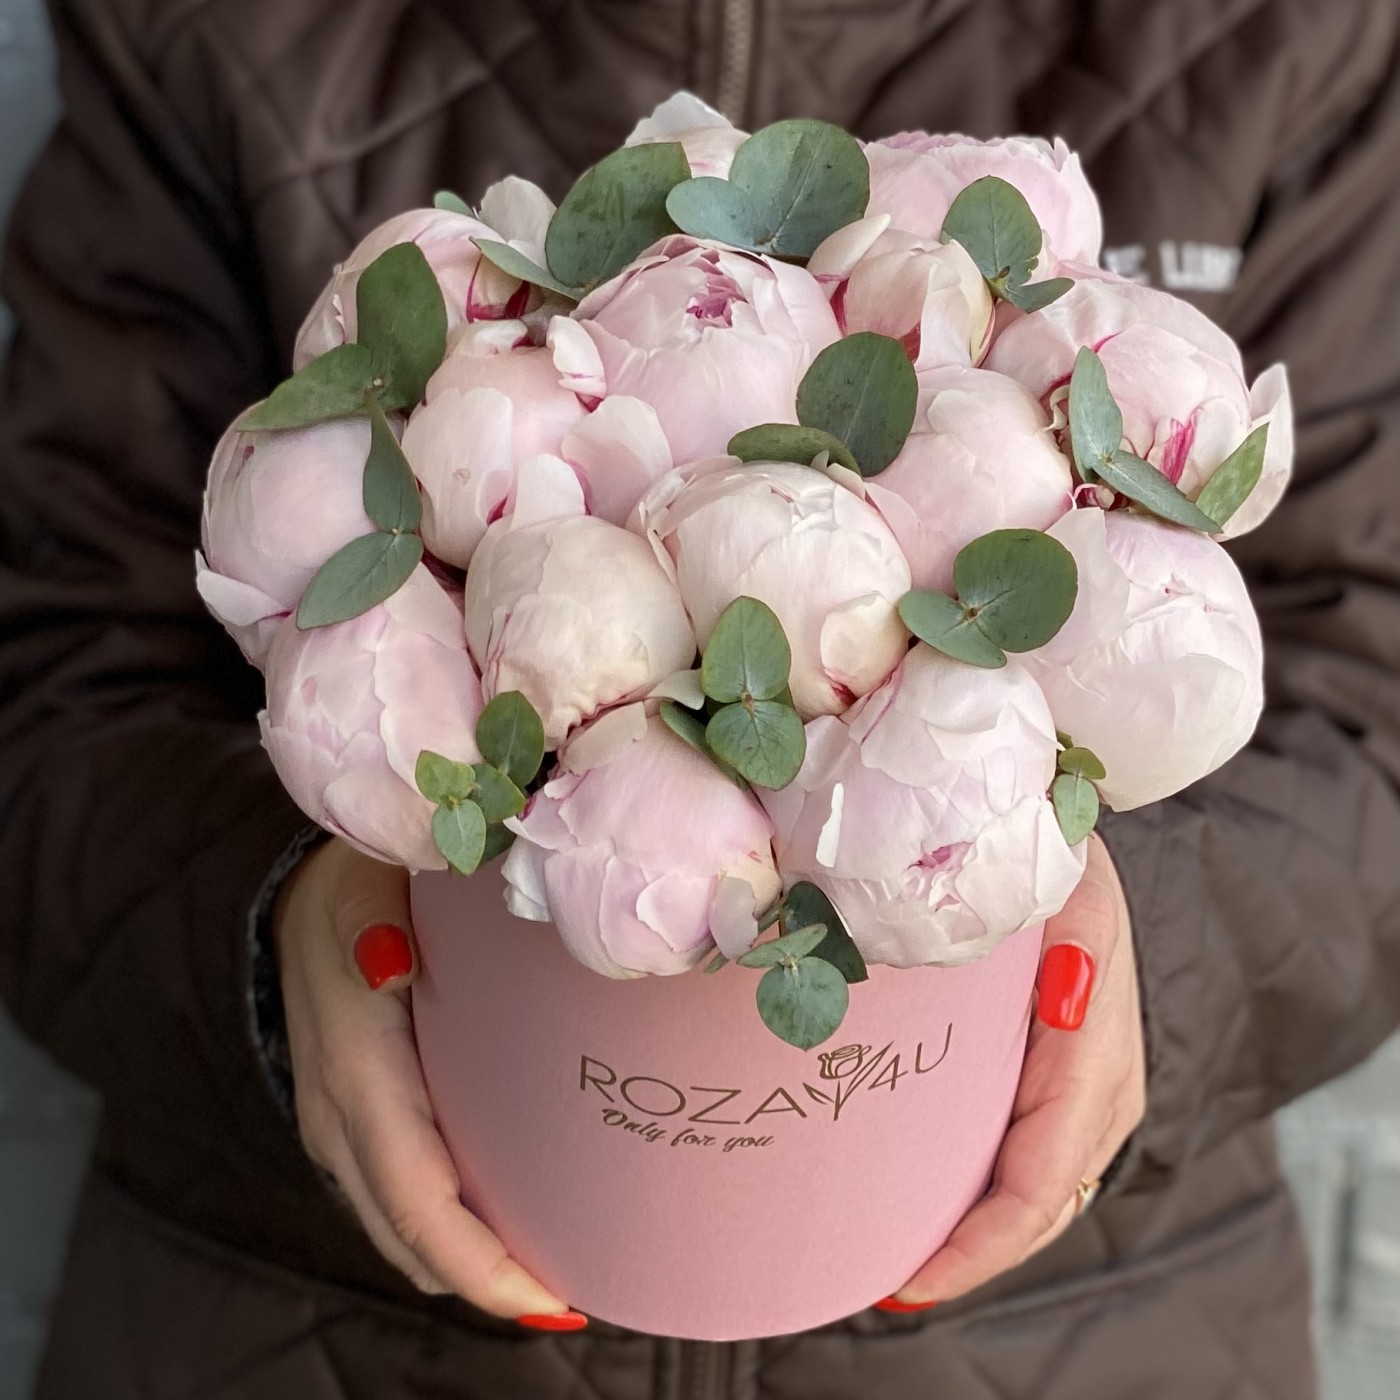 15 нежно-розовых пионов Сара Бернар в коробке